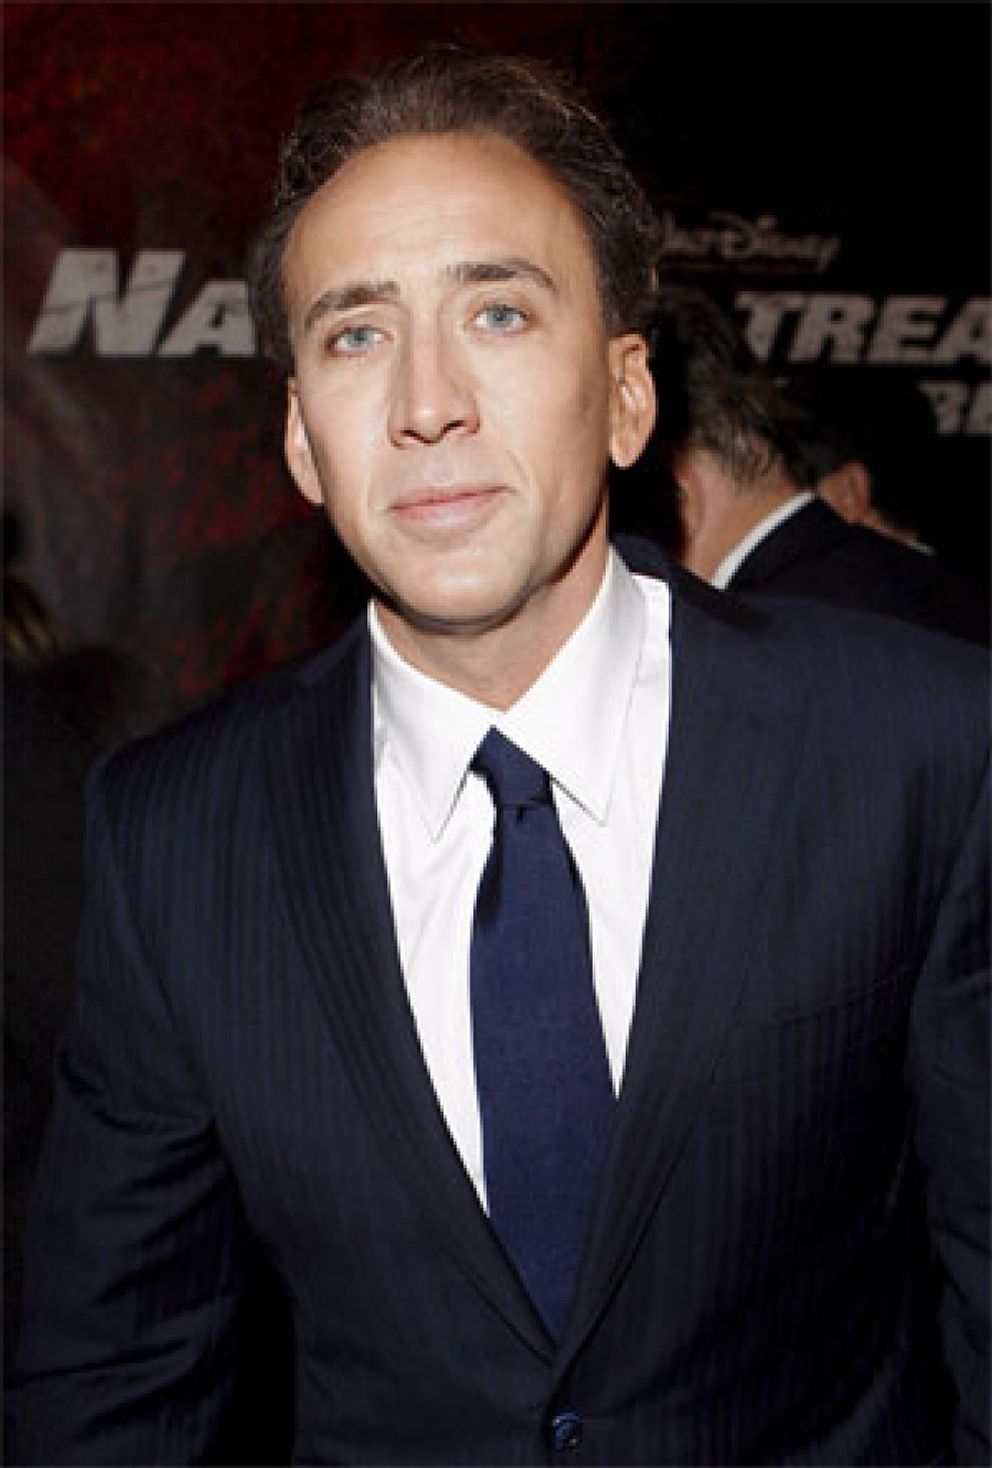 Foto: Nicolas Cage, premiado por su solidaridad